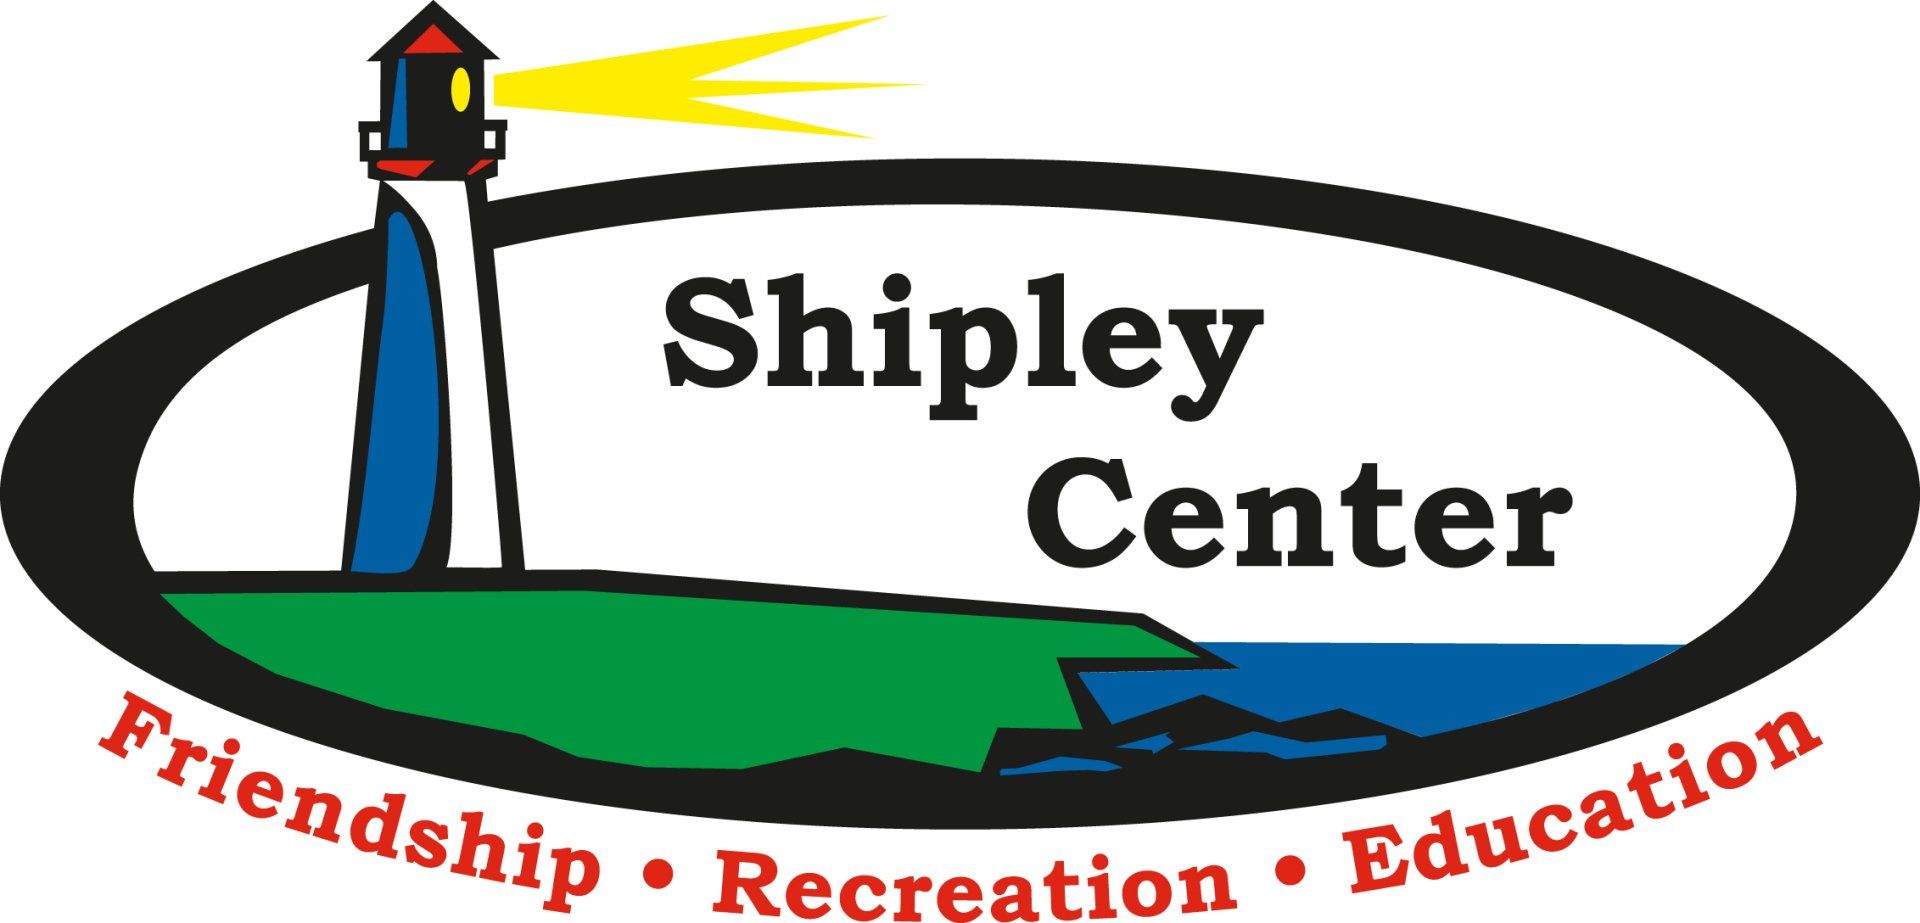 Shipley Center